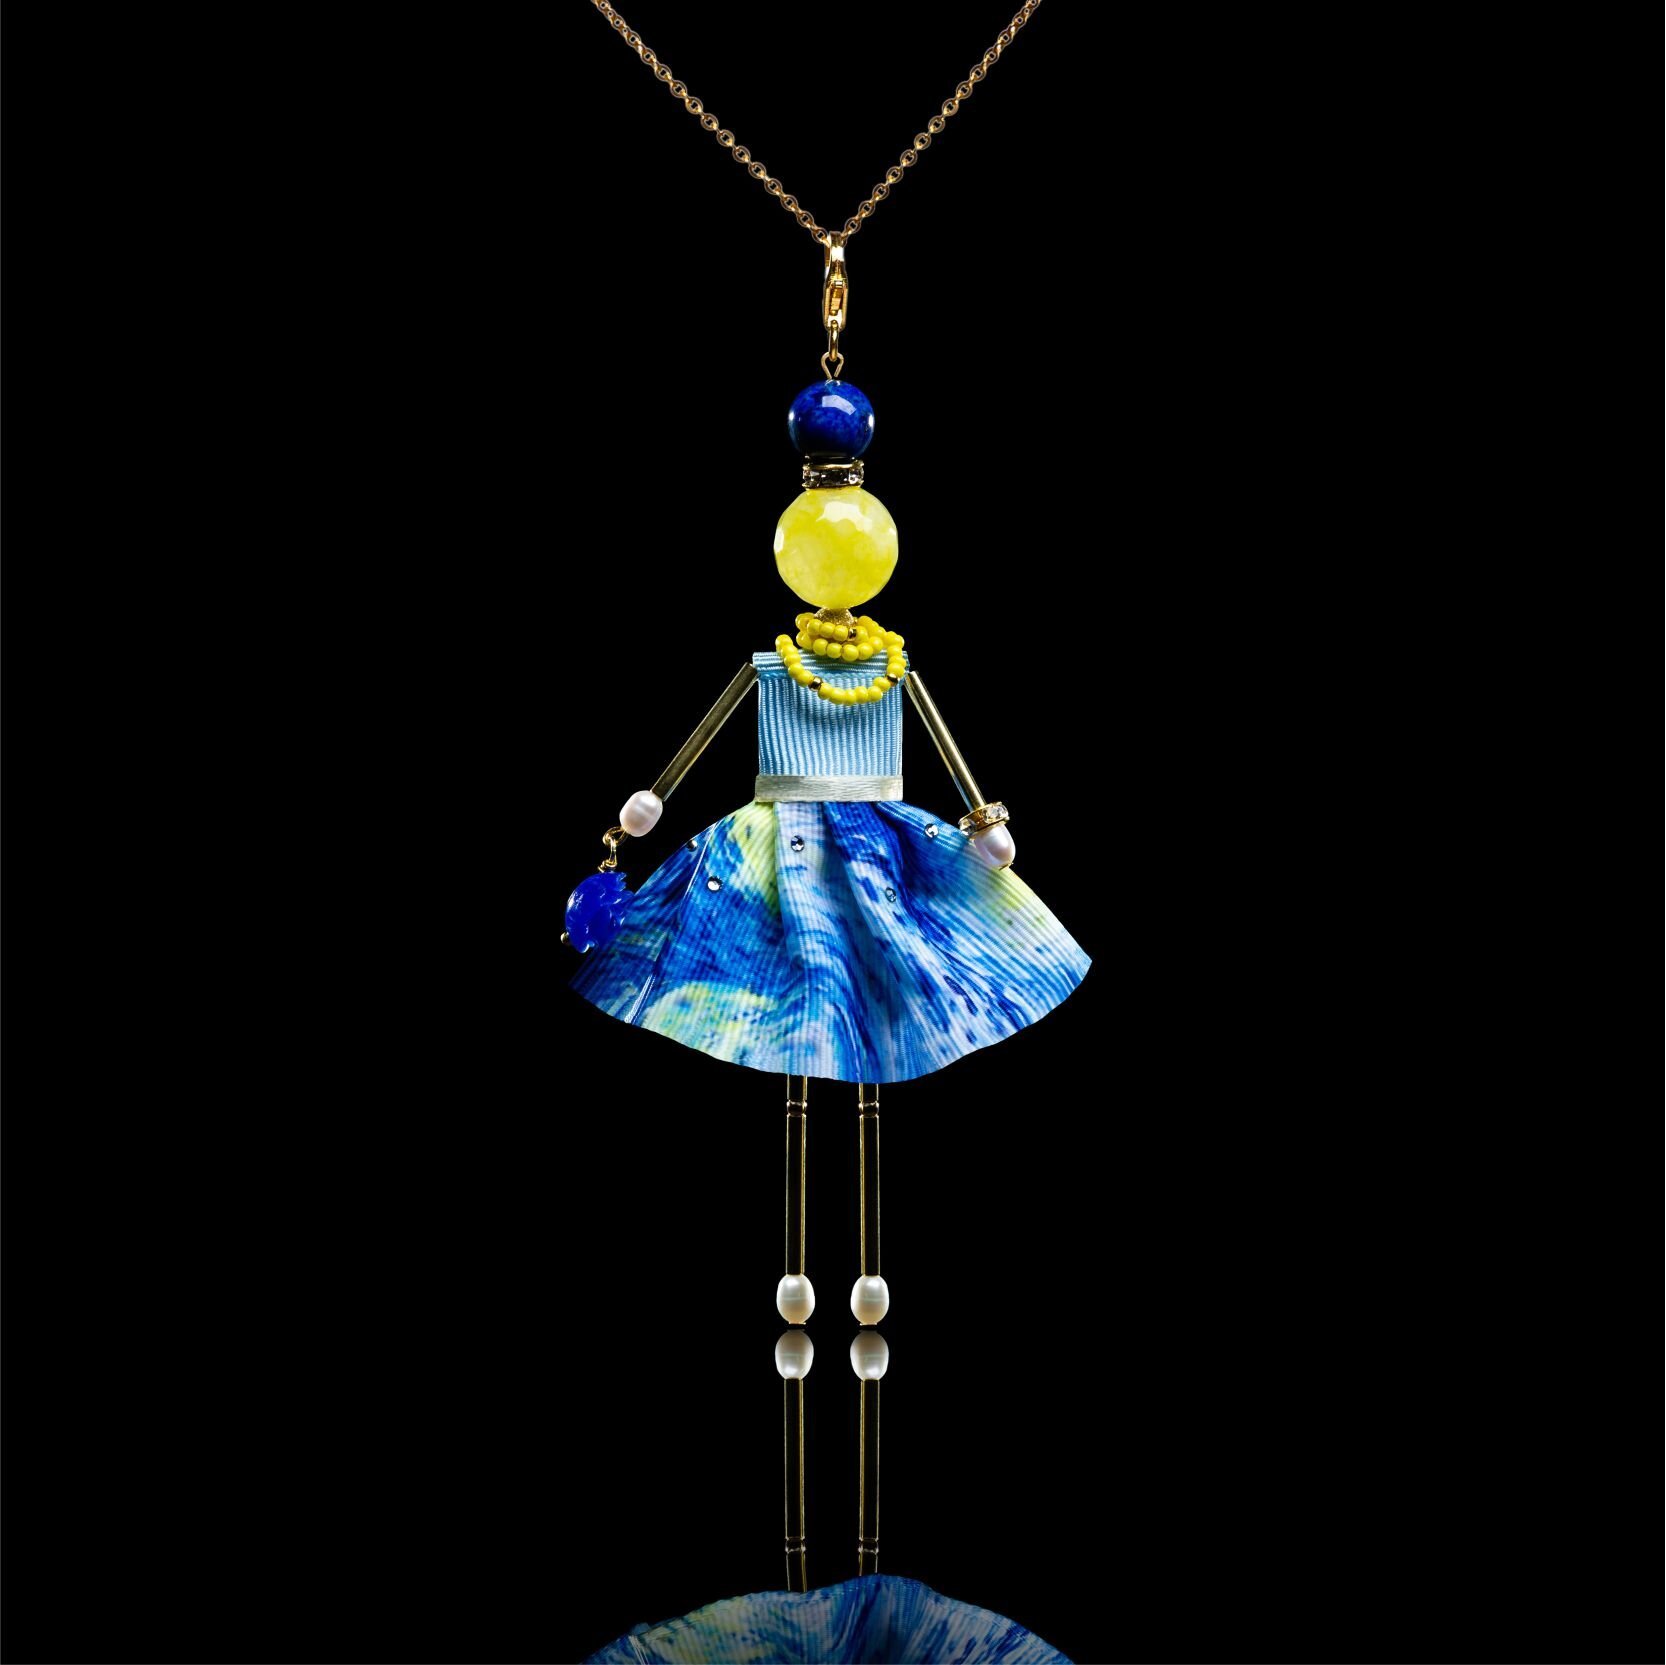 Куколка-подвеска с желтым агатом по мотивам картины «Звездное небо» Ван Гога